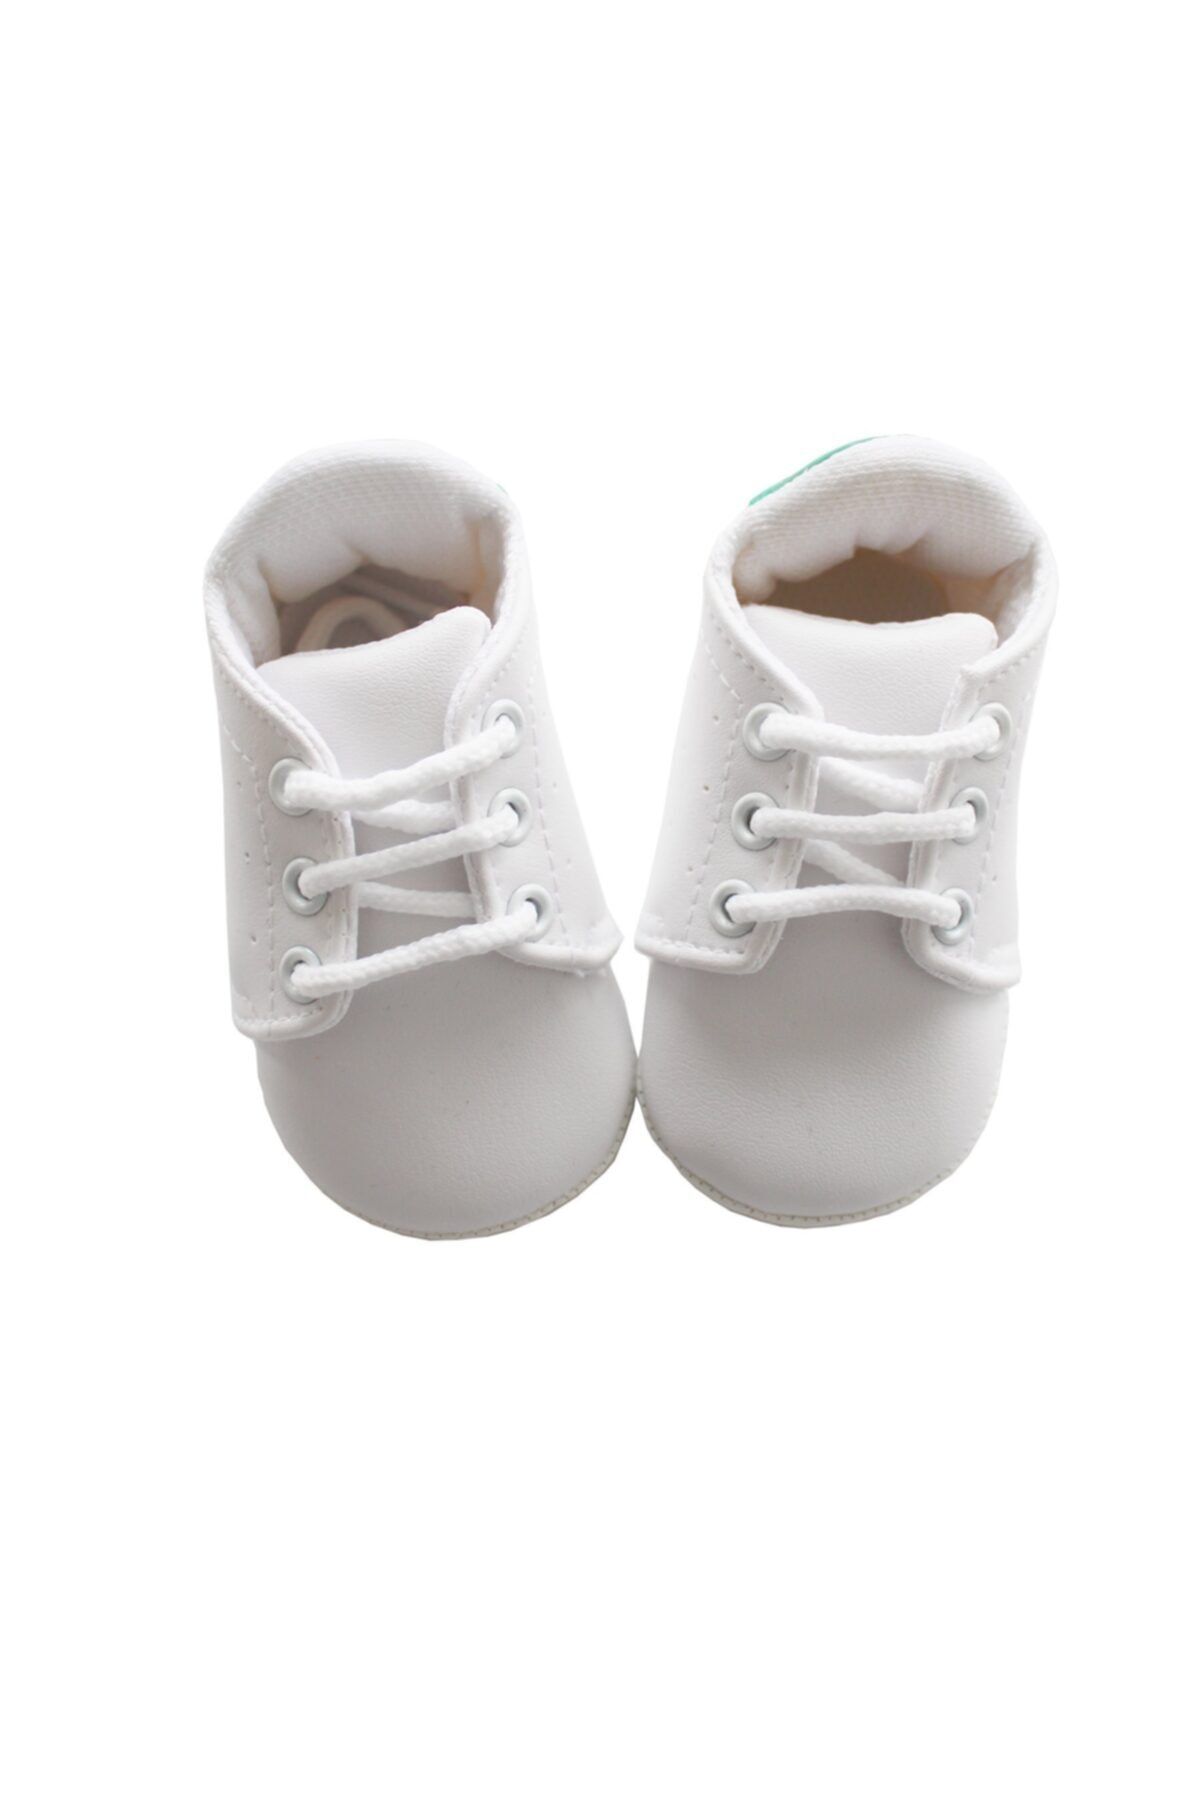 bebegen Newborn Beyaz Erkek Bebek Ayakkabı